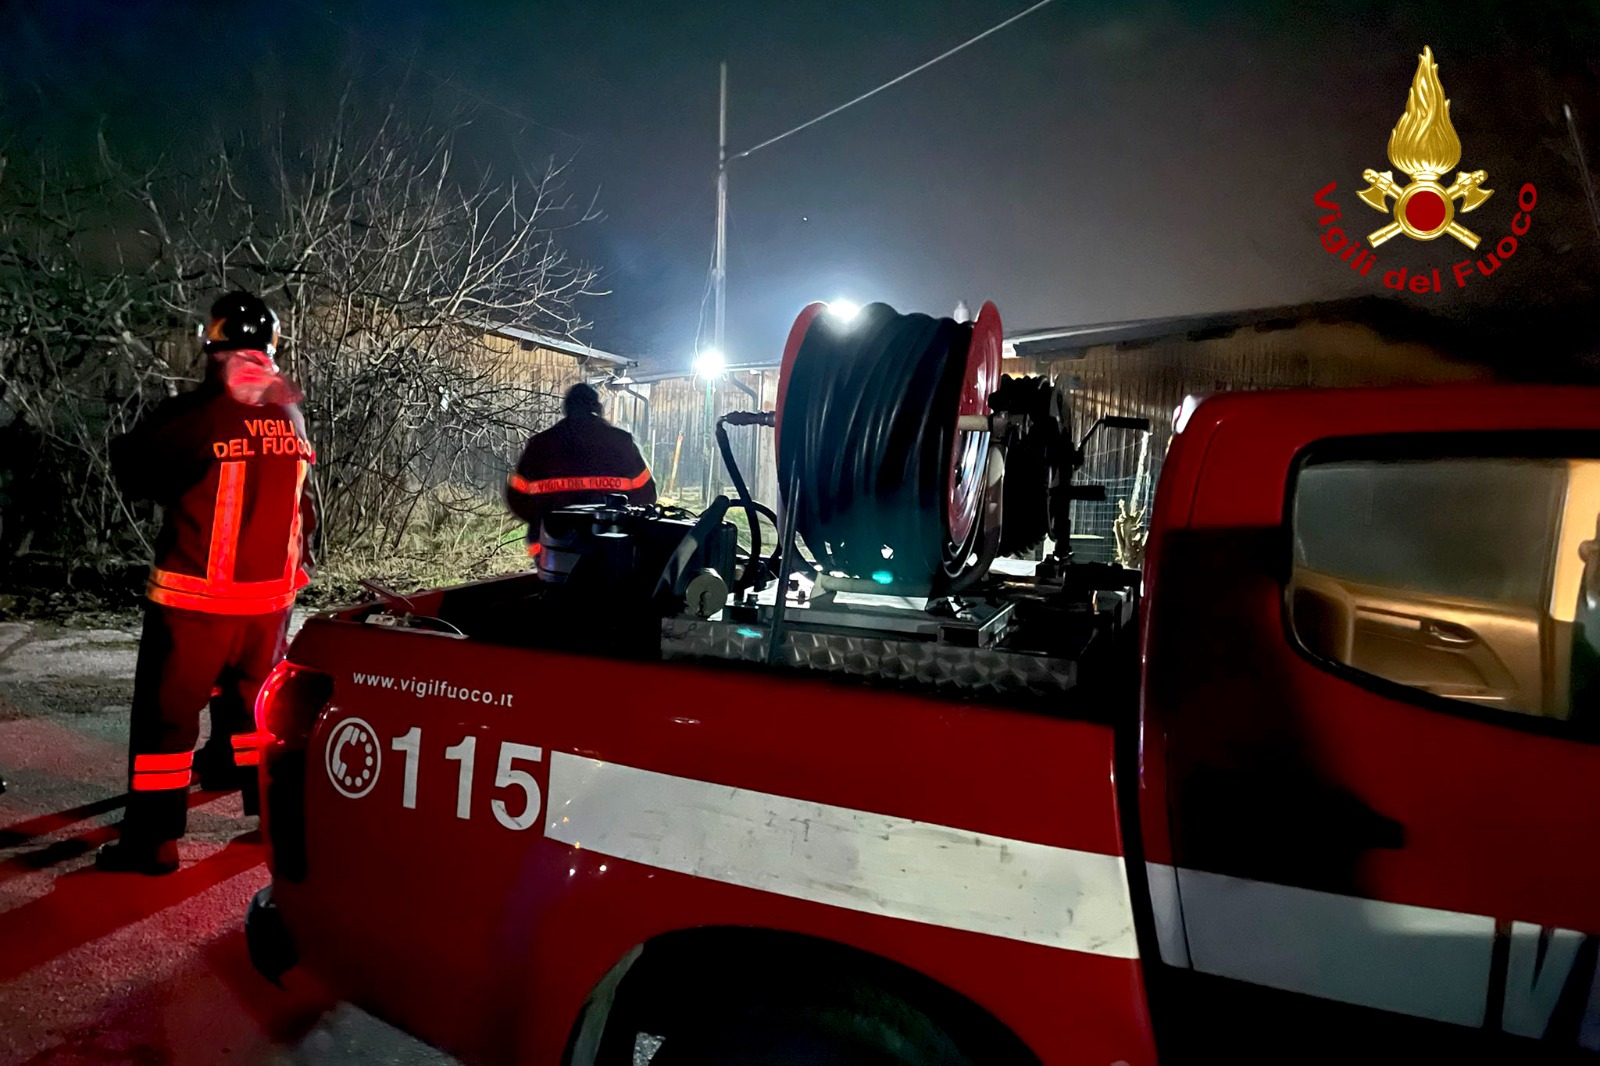 Fiamme nella notte, vigili del fuoco al lavoro a Serino e Montella: danni ad un tir e a un prefabbricato post sisma